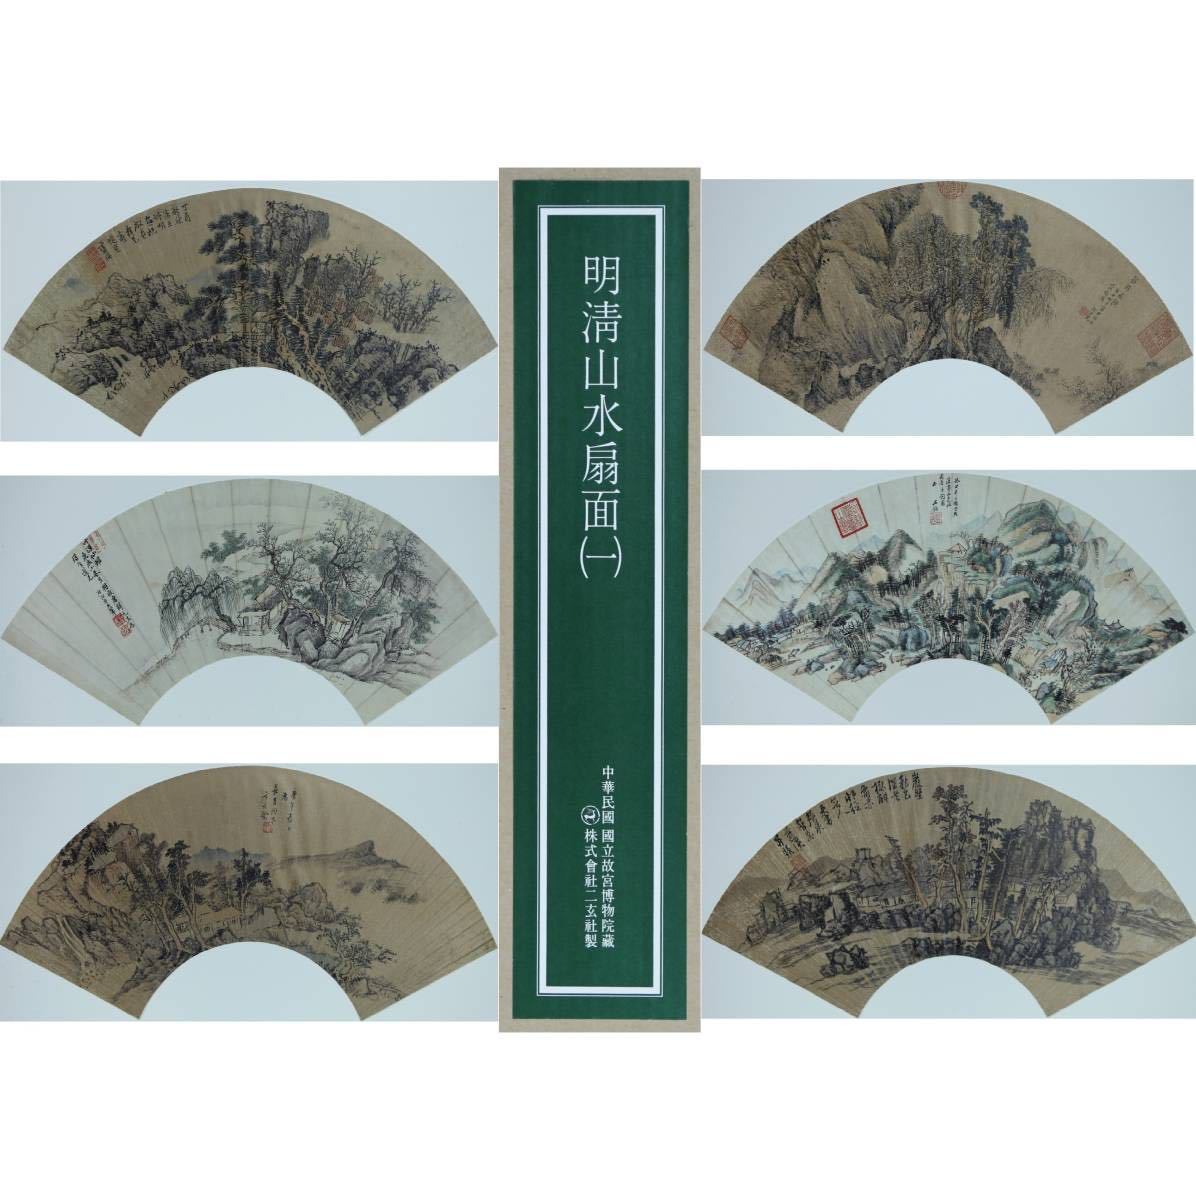 [प्रजनन] [पवनचक्की] एरक्सुआन्शा मिंग किंग लैंडस्केप फैन संग्रह खंड 1 ◎पूर्ण पैमाने पर पुनरुत्पादन, कुल 14 पेंटिंग ◎राष्ट्रीय पैलेस संग्रहालय संग्रह प्रसिद्ध प्राचीन चीनी पेंटिंग ताइपे, चीन गणराज्य चीनी कला चीनी पेंटिंग, कलाकृति, चित्रकारी, अन्य